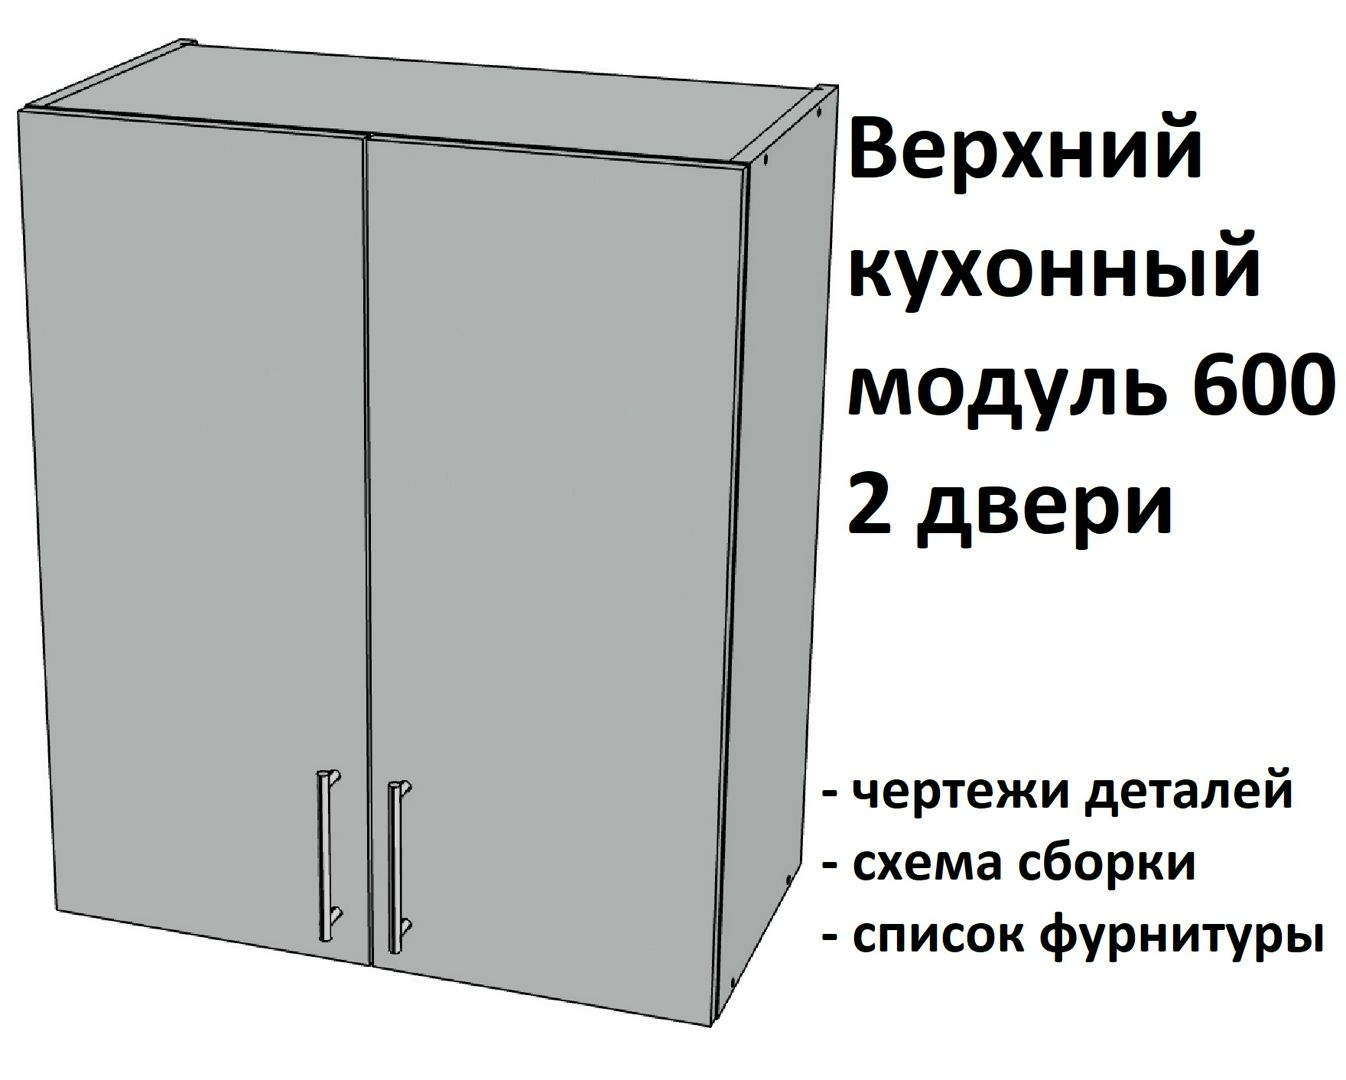 Верхний подвесной кухонный модуль 600, 2 двери - Комплект чертежей для изготовления корпусной мебели